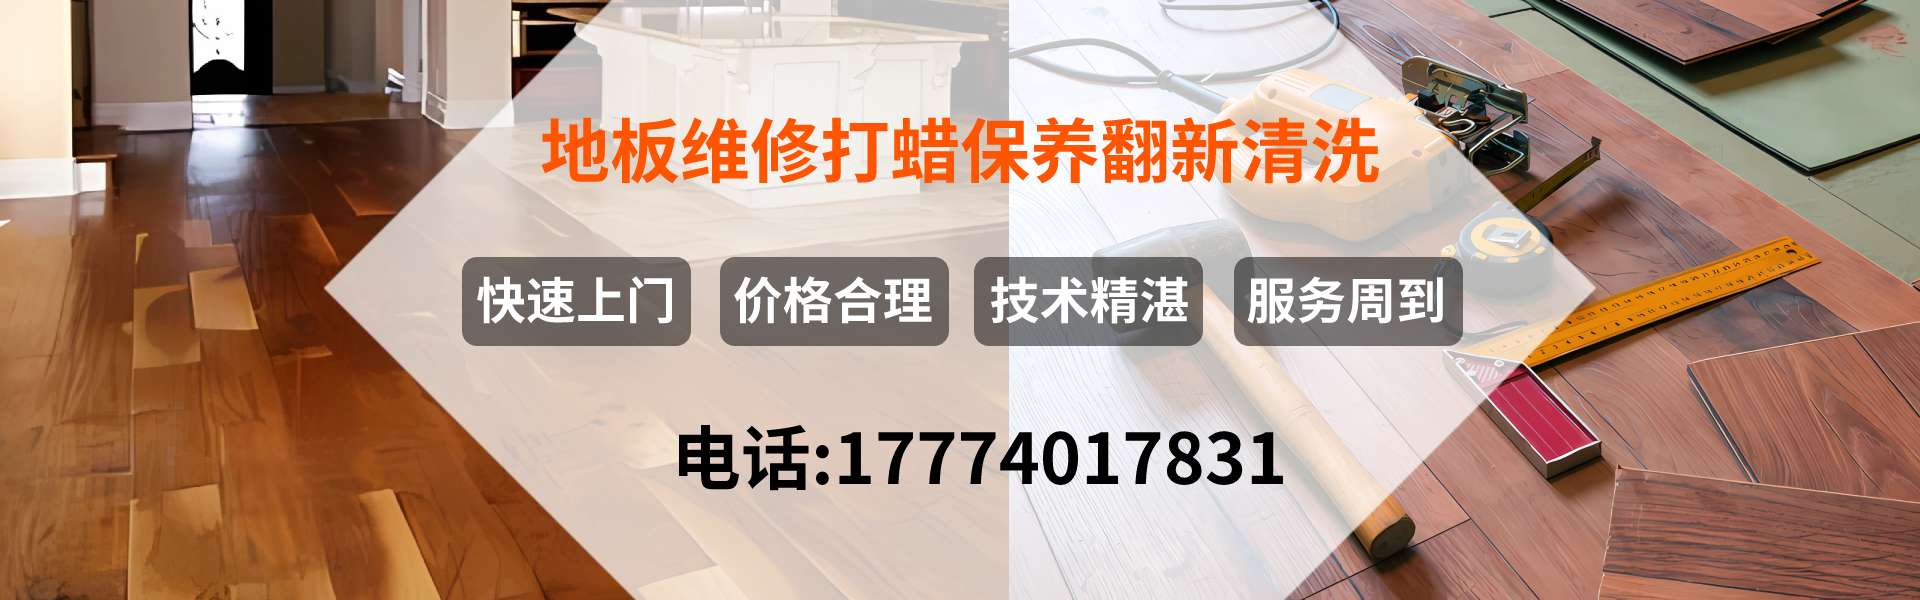 杭州地板安装维修翻新保养清洗